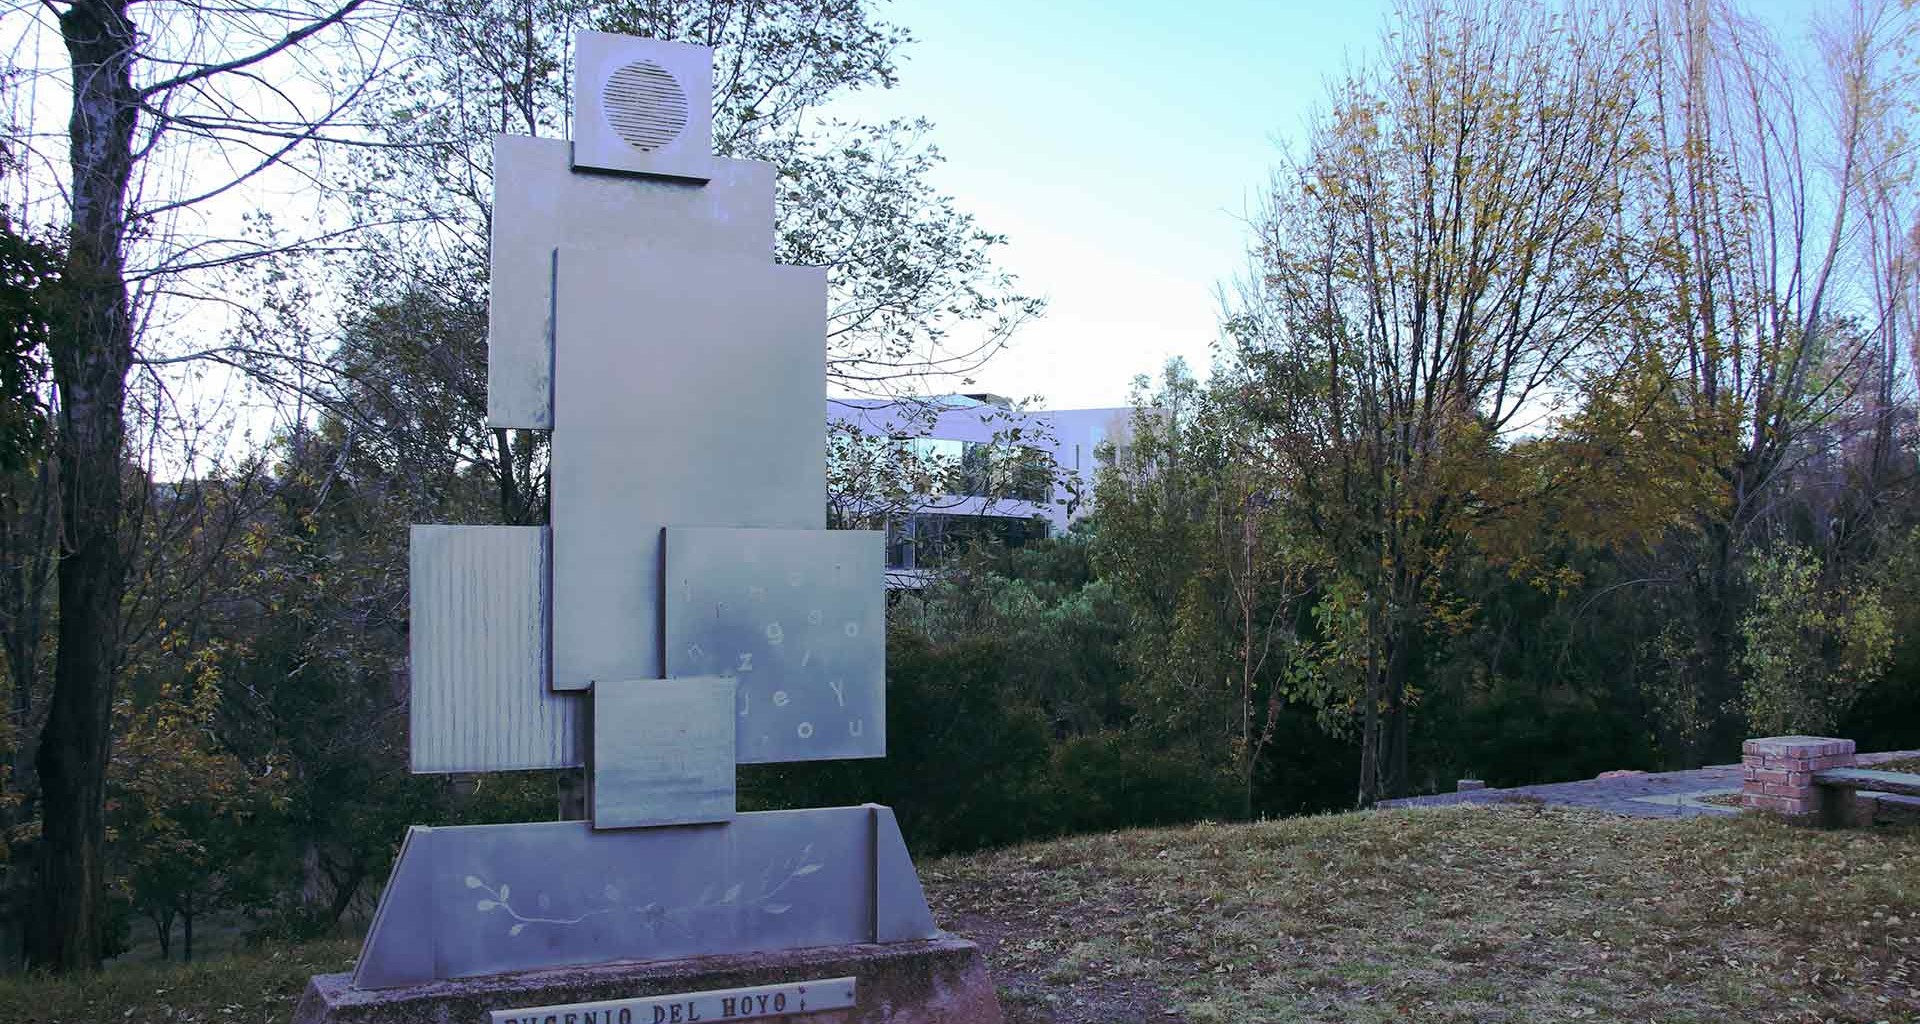 Imagen del monumento en Memoria a Don Eugenio del Hoyo, a un costado de cafeteria, se muestran varias figuras rectangulares, acomodadas una sobre la otra y articuladas verticalmente.